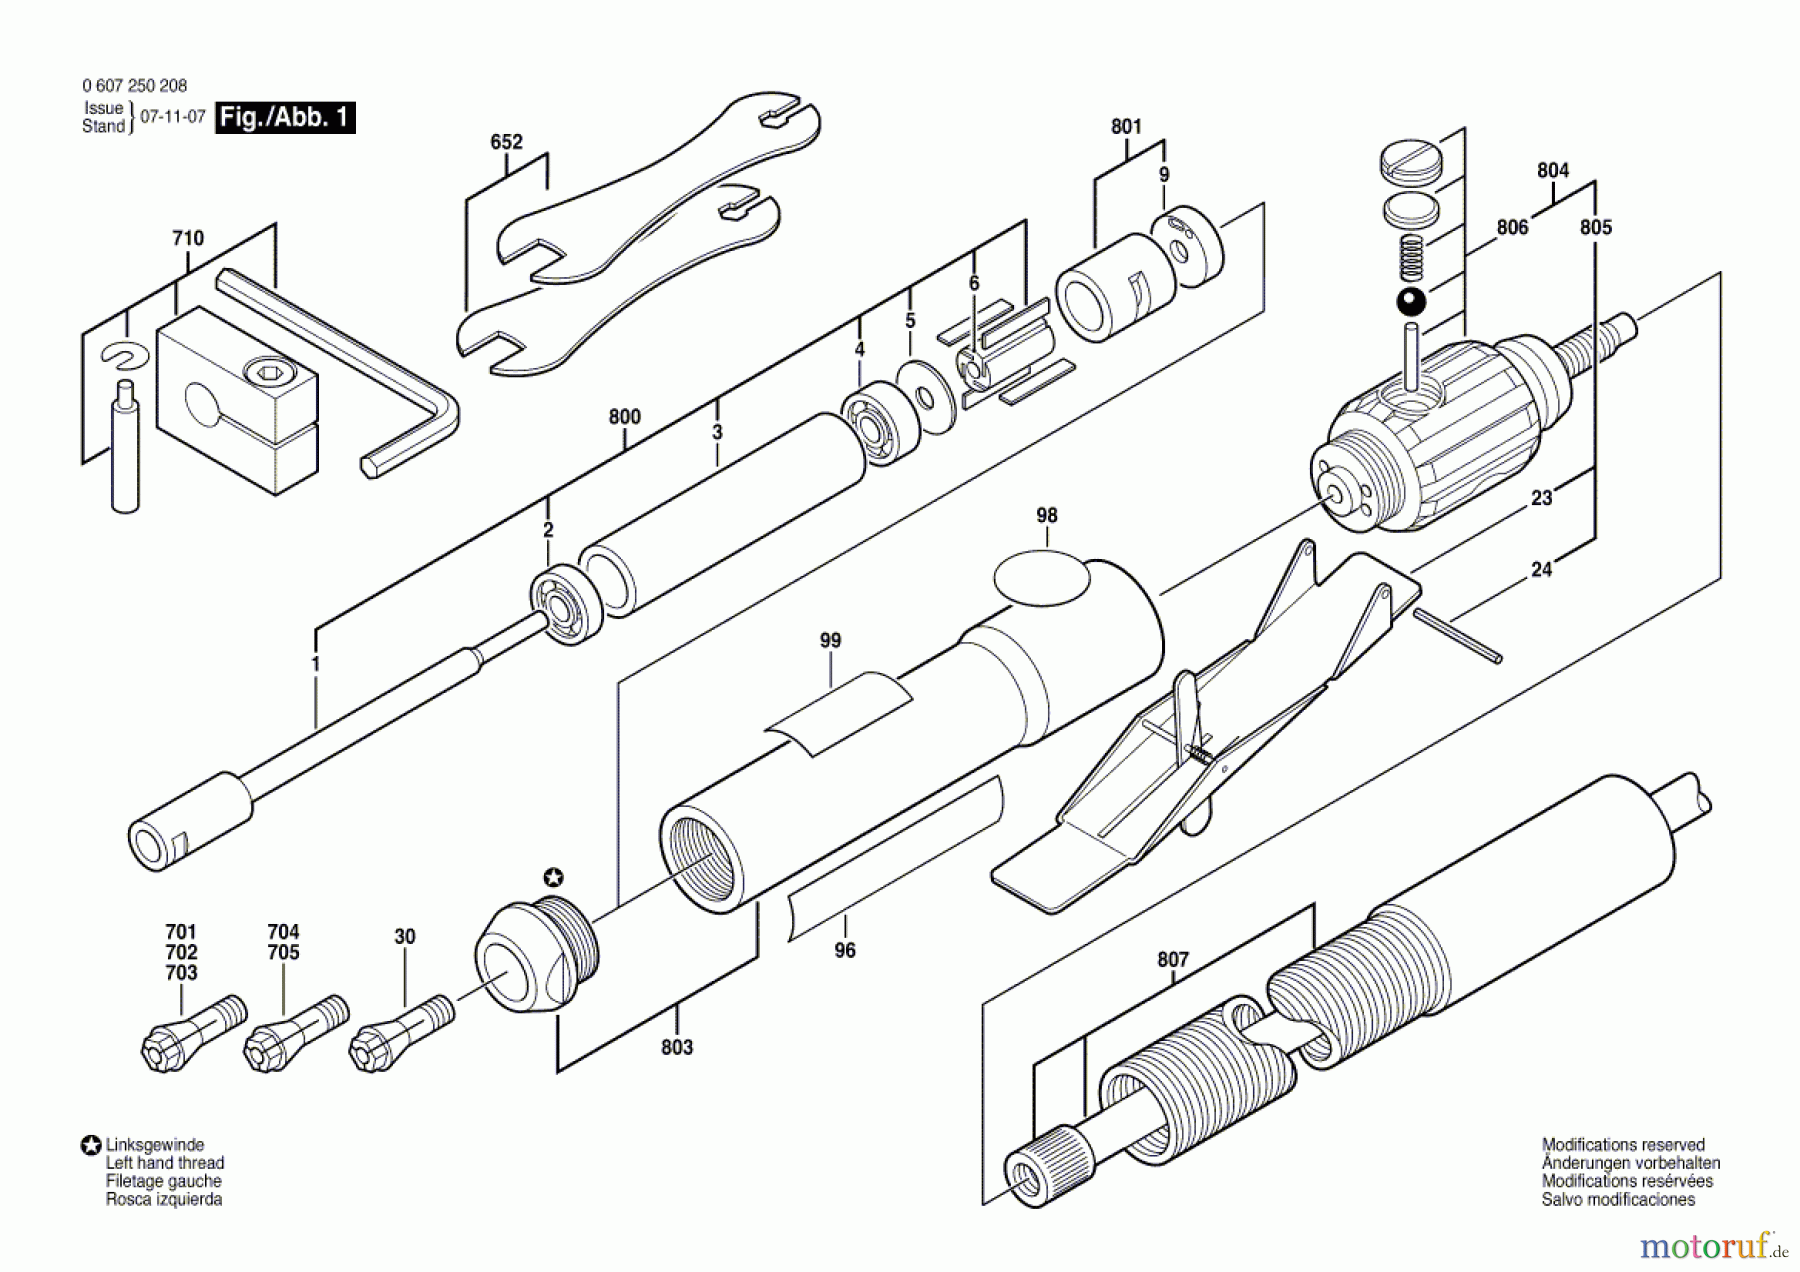  Bosch Werkzeug Pw-Geradschleifer 50 WATT-SERIE Seite 1